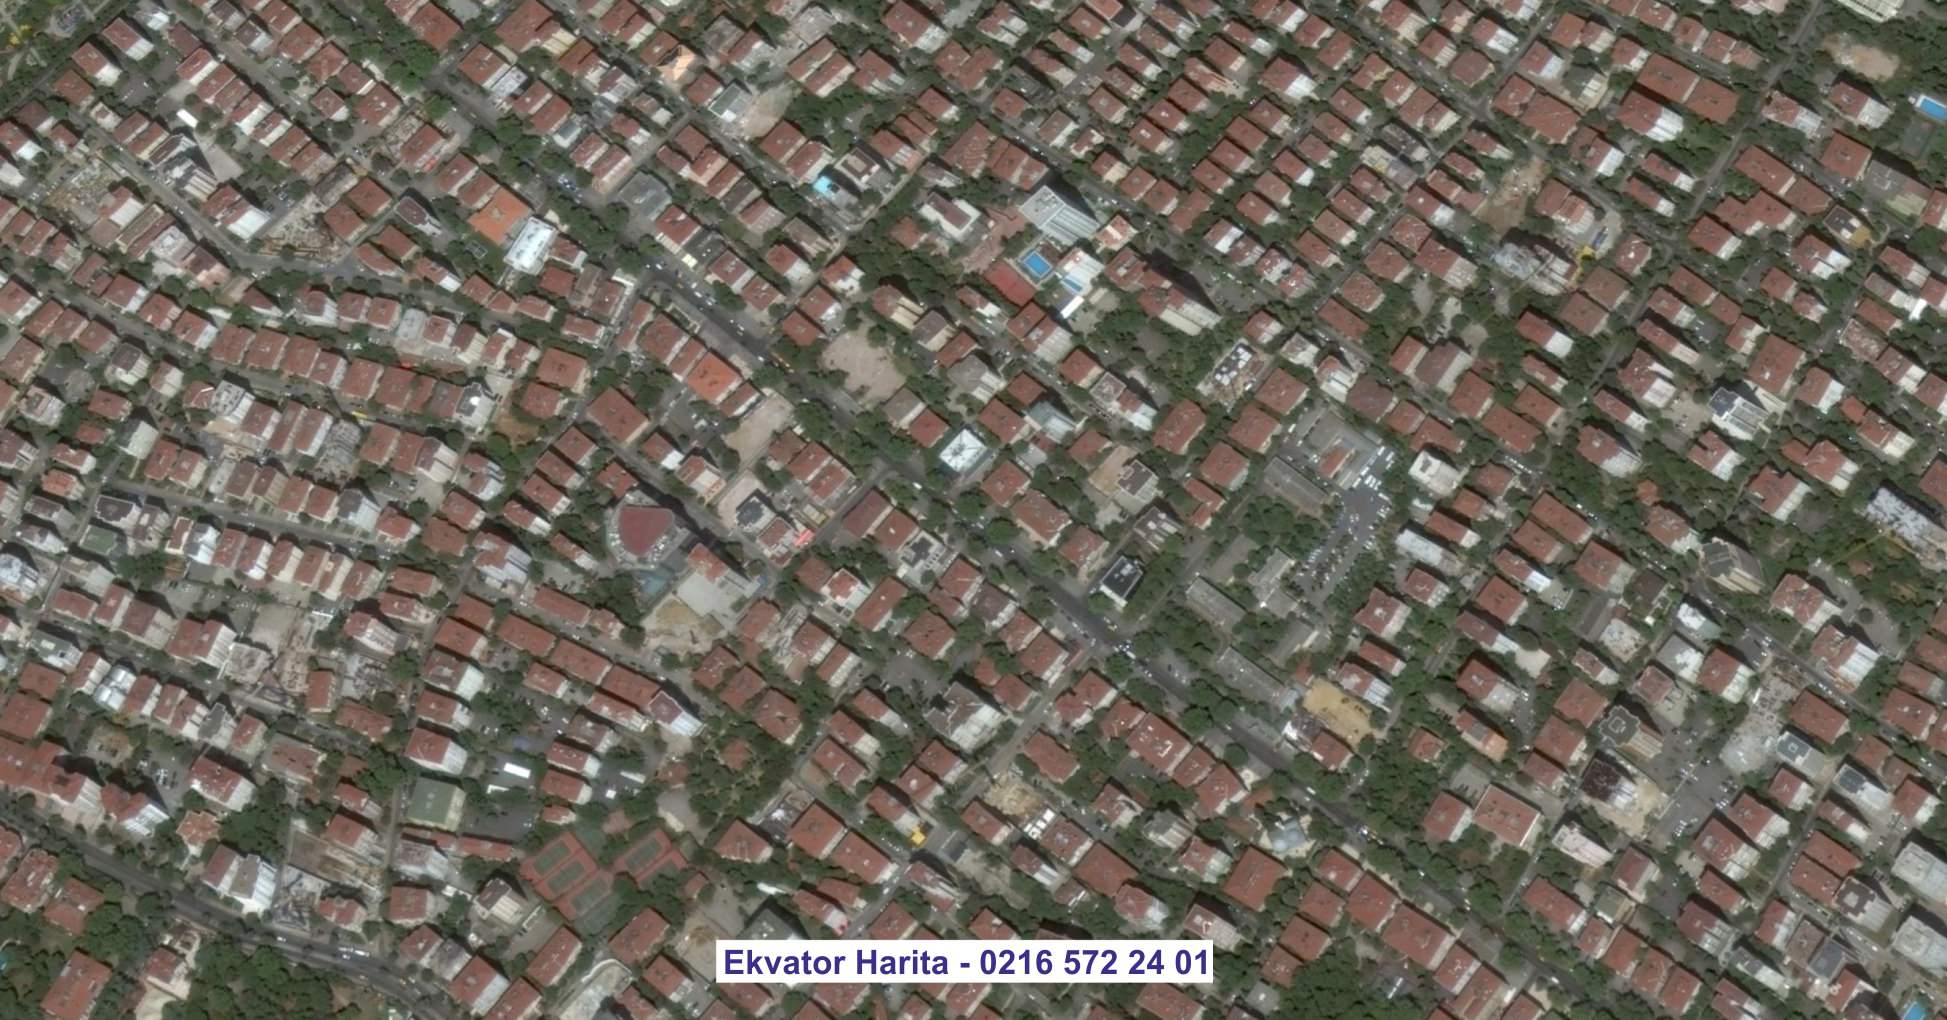 Kadıköy Uydu Görüntüsü Örnek Fotoğrafı